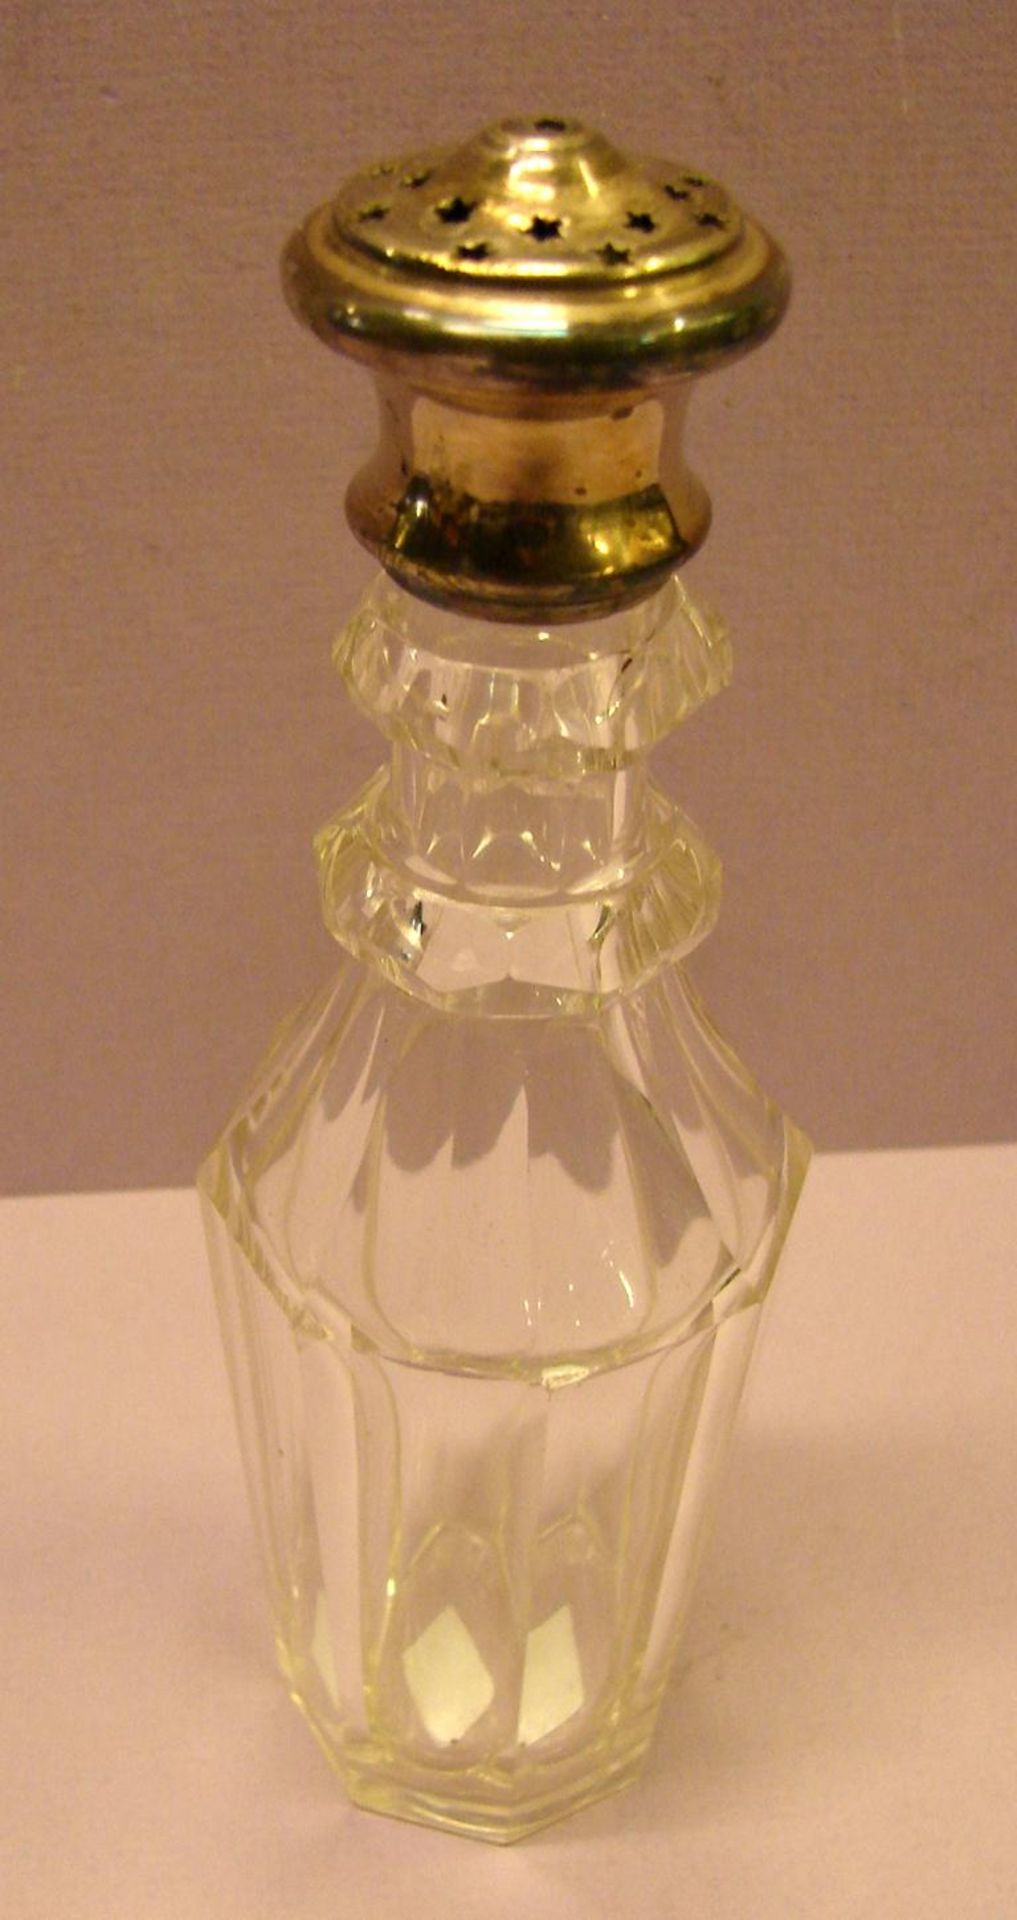 2 Teile: Zuckerstreuer, Glas/Silberdeckel, 835er Silber, H.ca. 14 cm; kl. Glas mit versilbertem ...